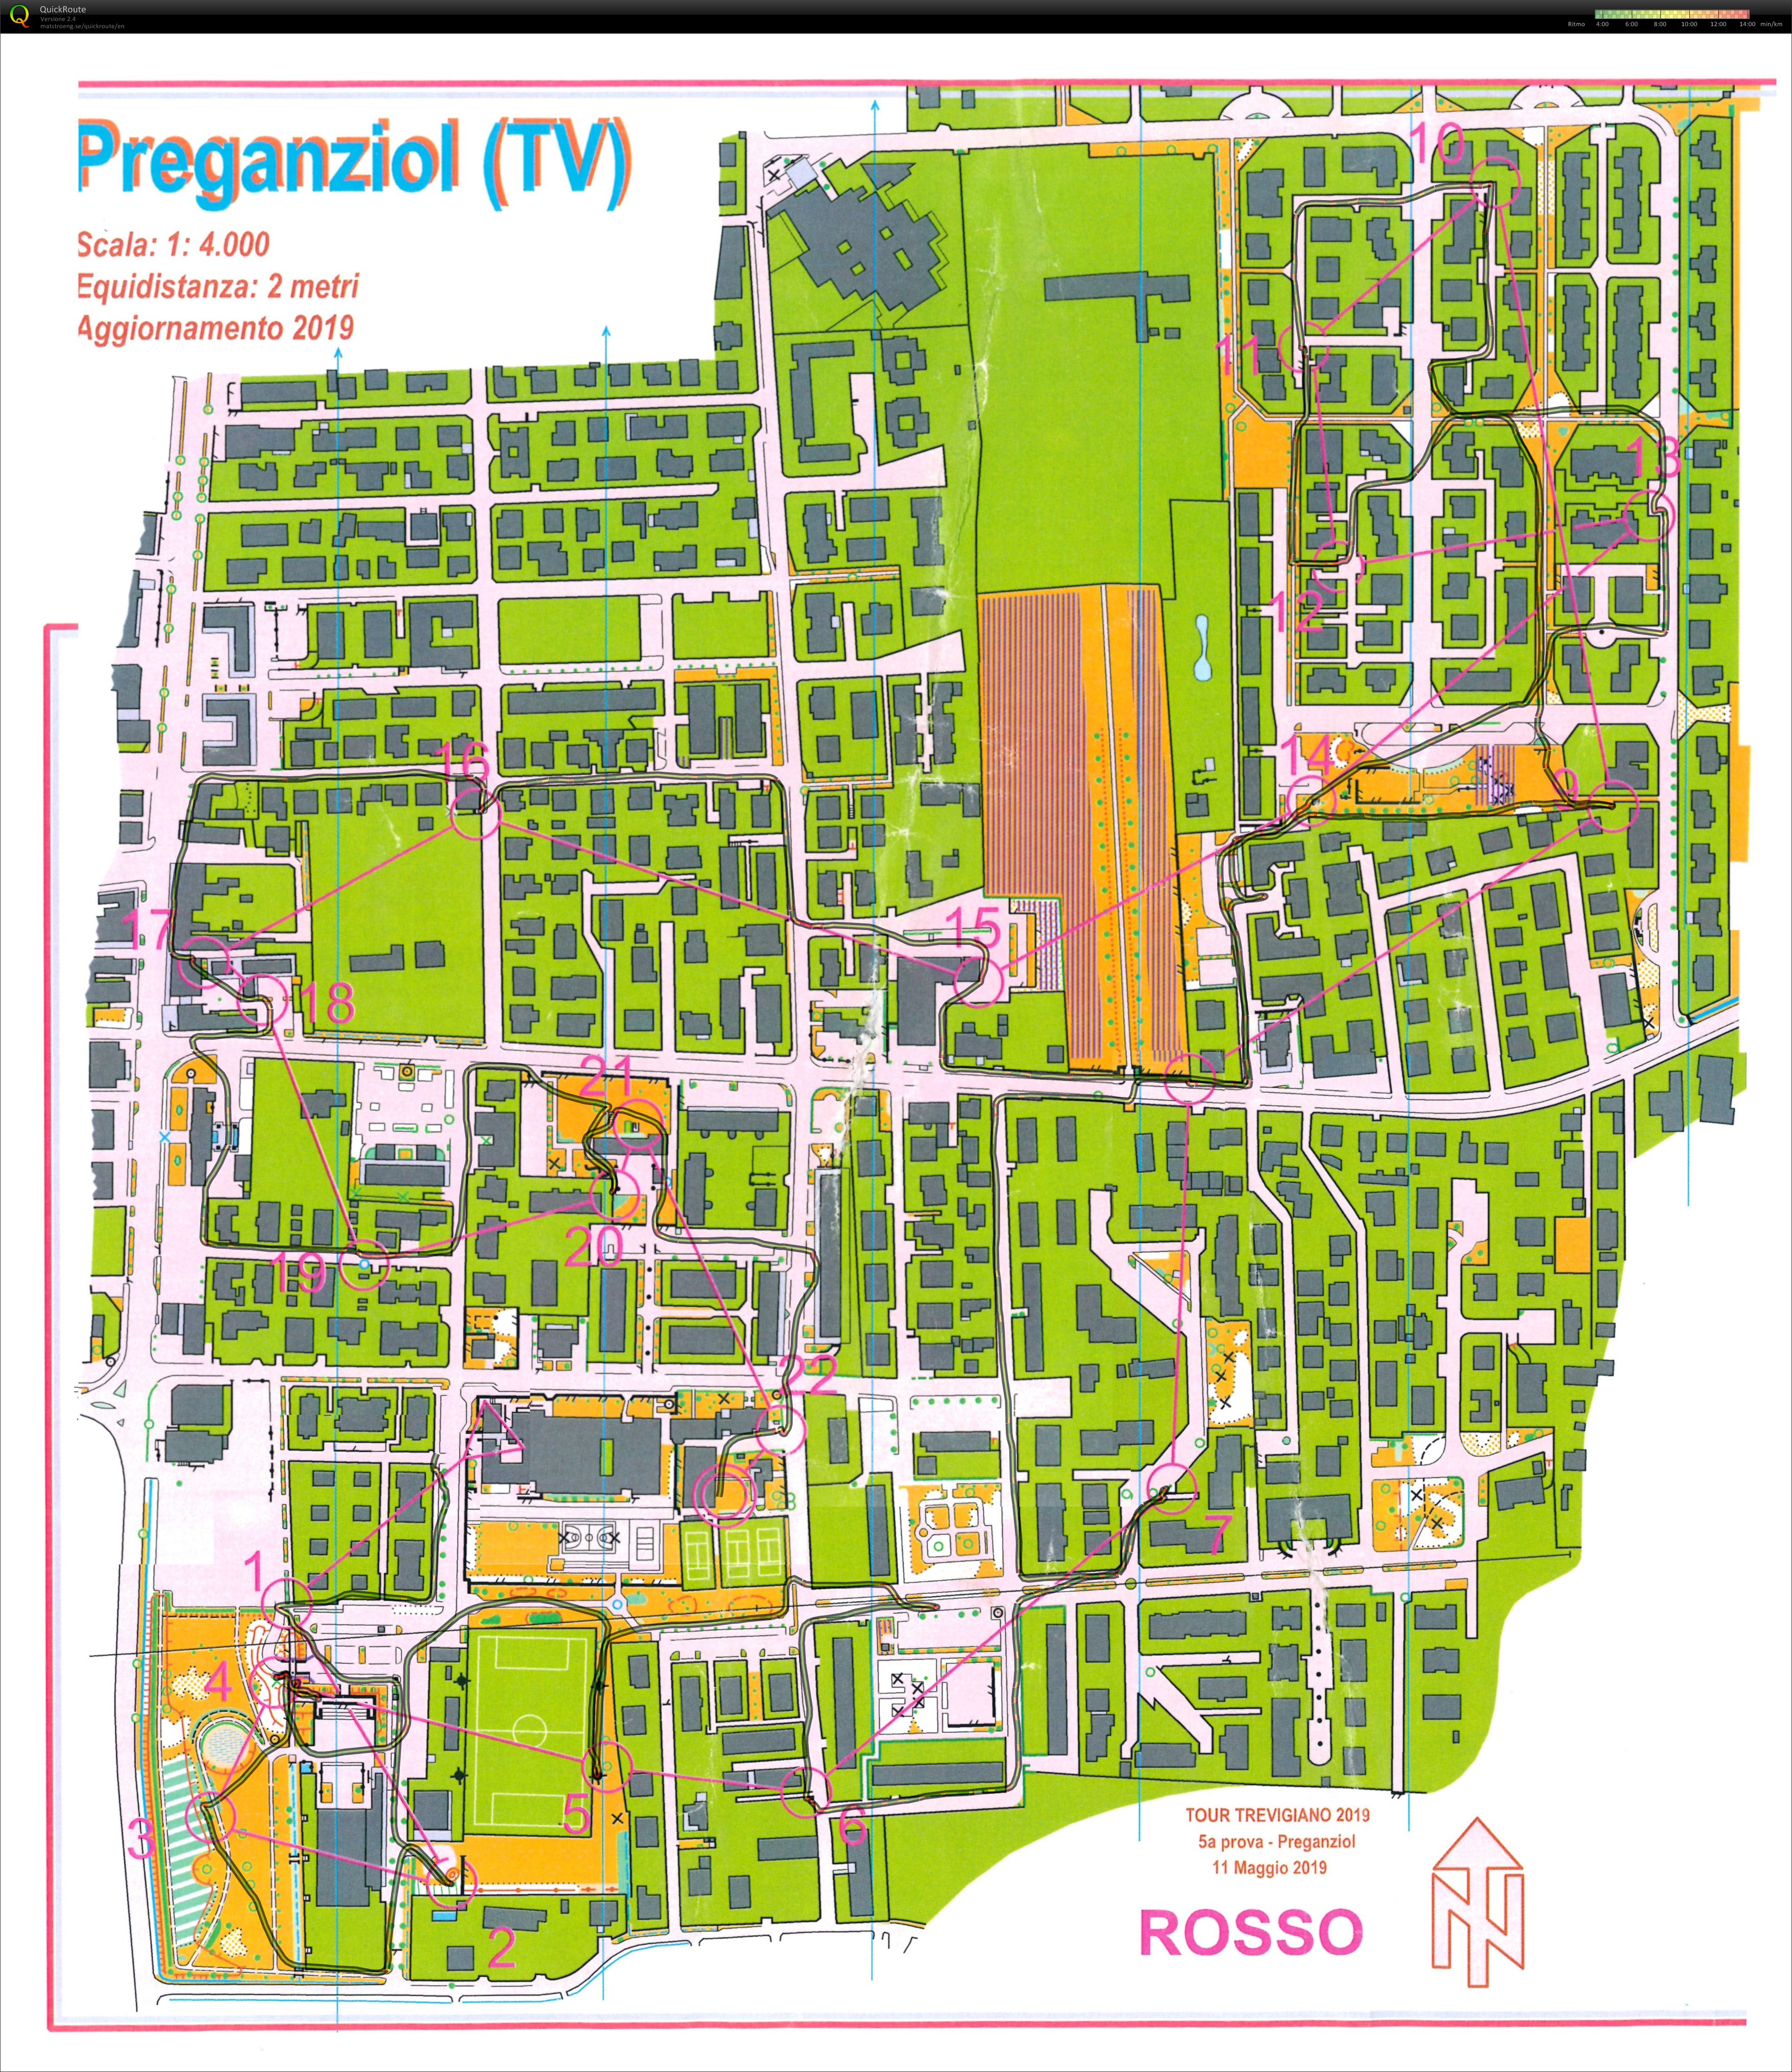 Preganziol - 5 prova o-tour Trevigiano 2019 (2019-05-11)